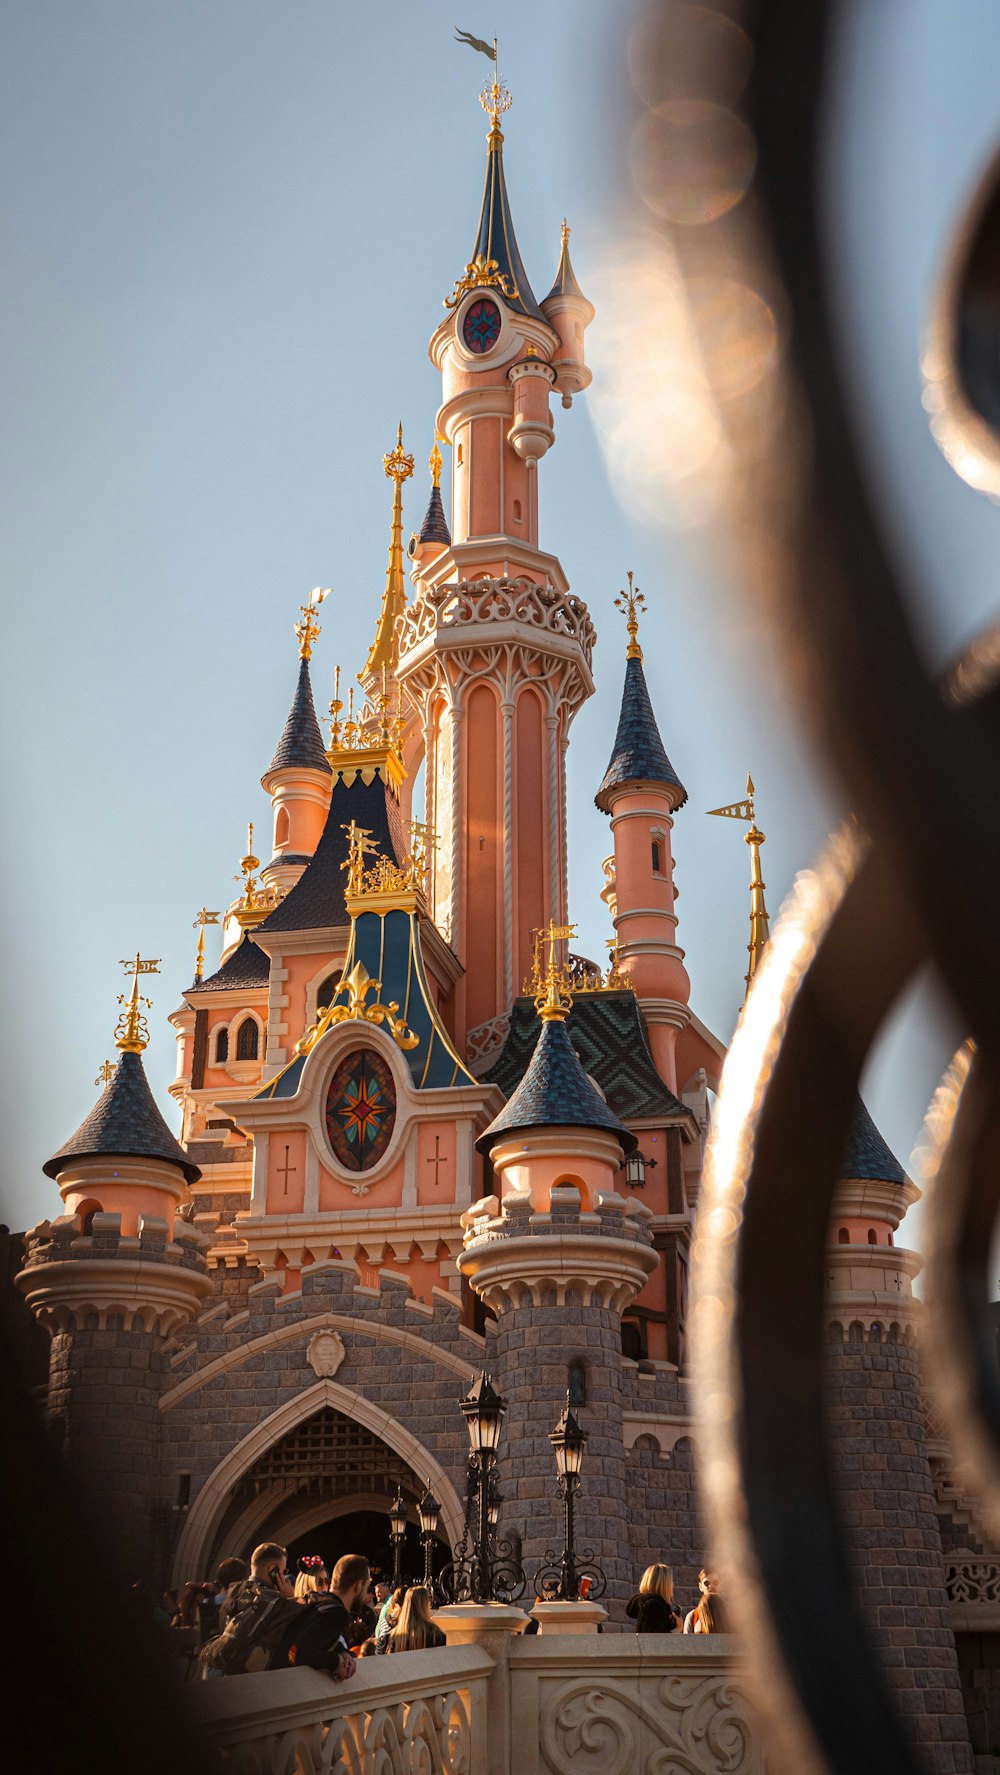 Un grand bâtiment avec une tour de l'horloge photo – Photo Disneyland paris  Gratuite sur Unsplash